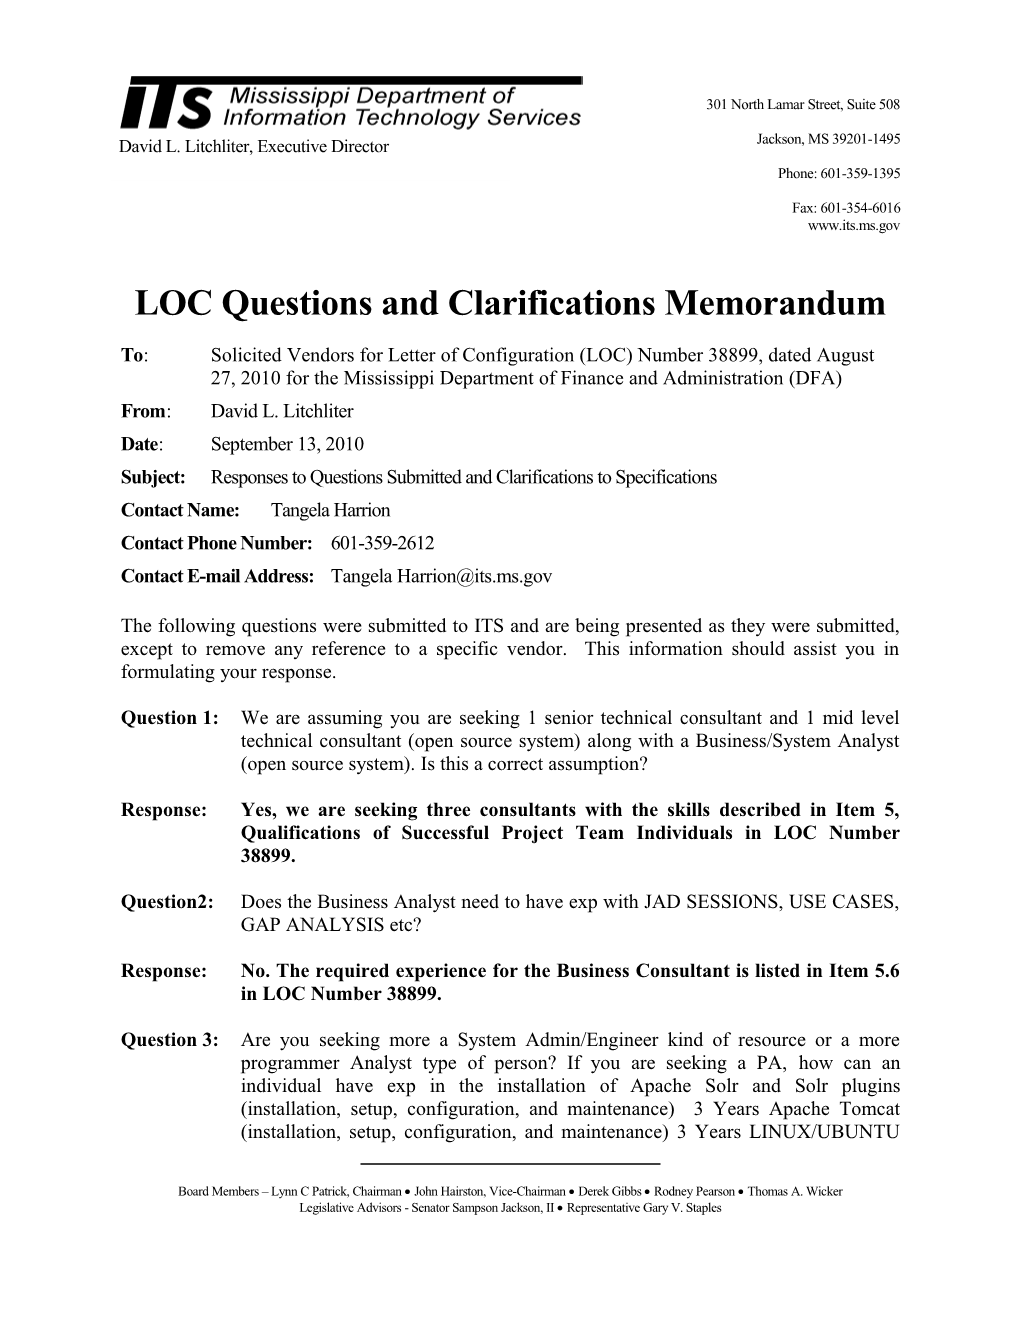 Memorandum for General RFP Configuration s8